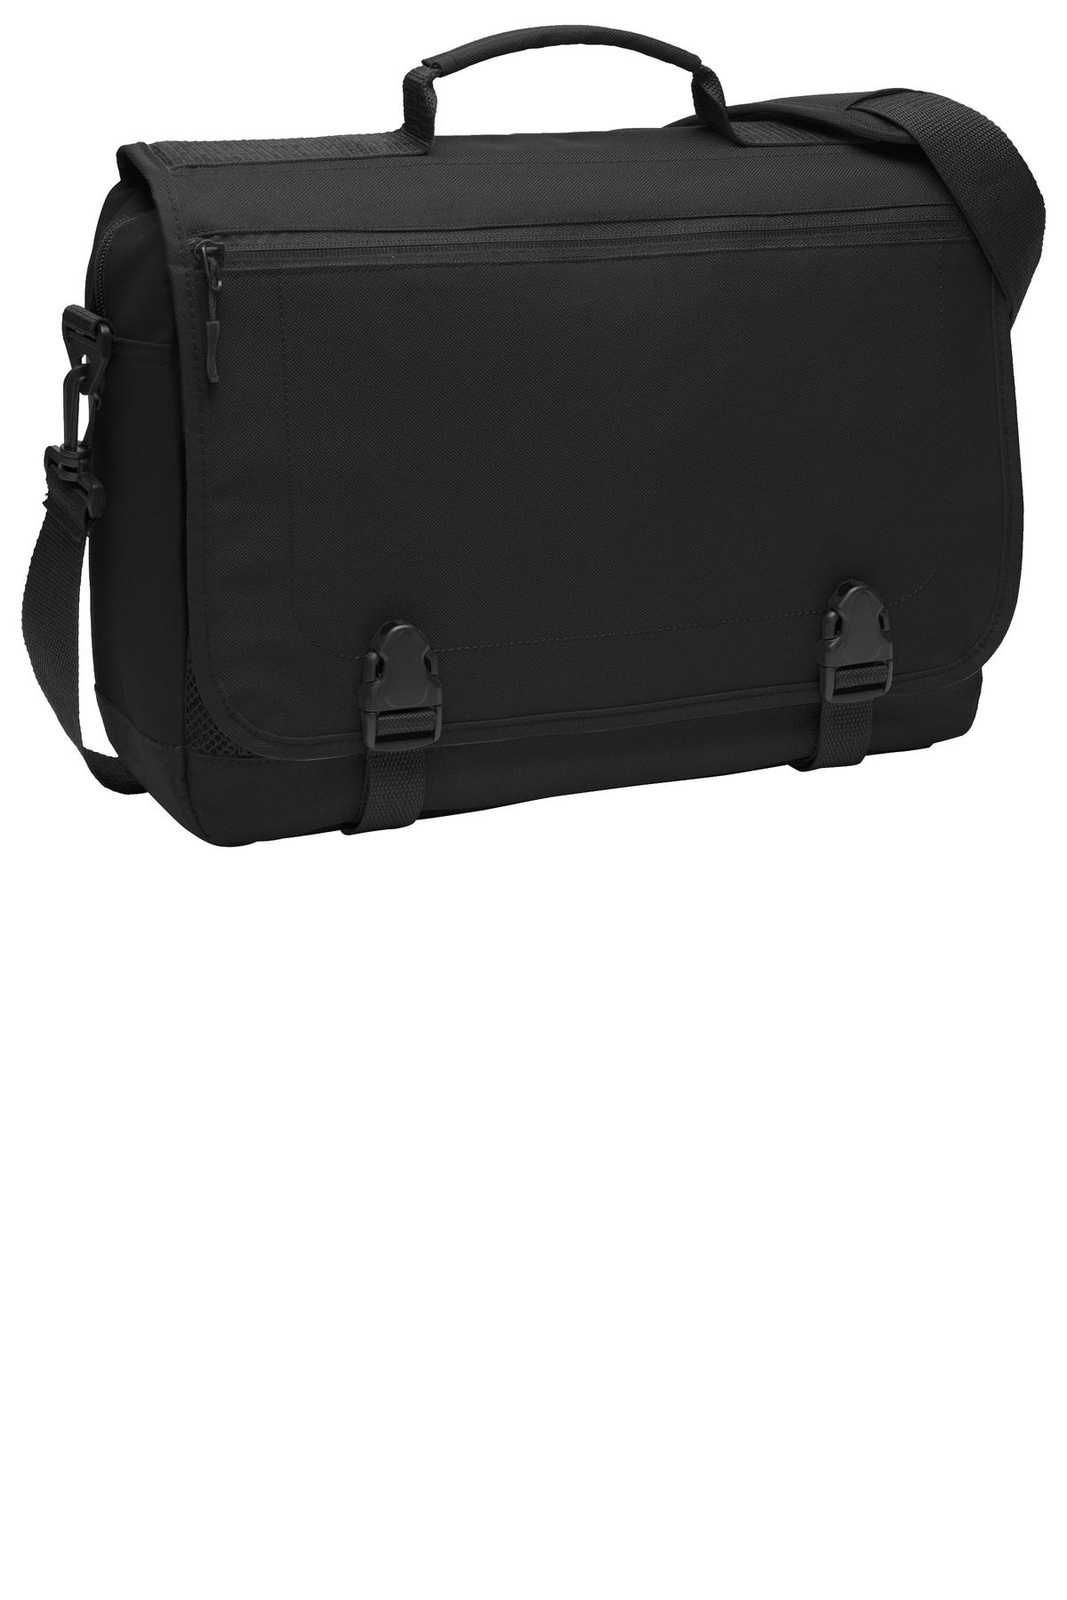 Port Authority BG304 Messenger Briefcase - Black - HIT a Double - 1